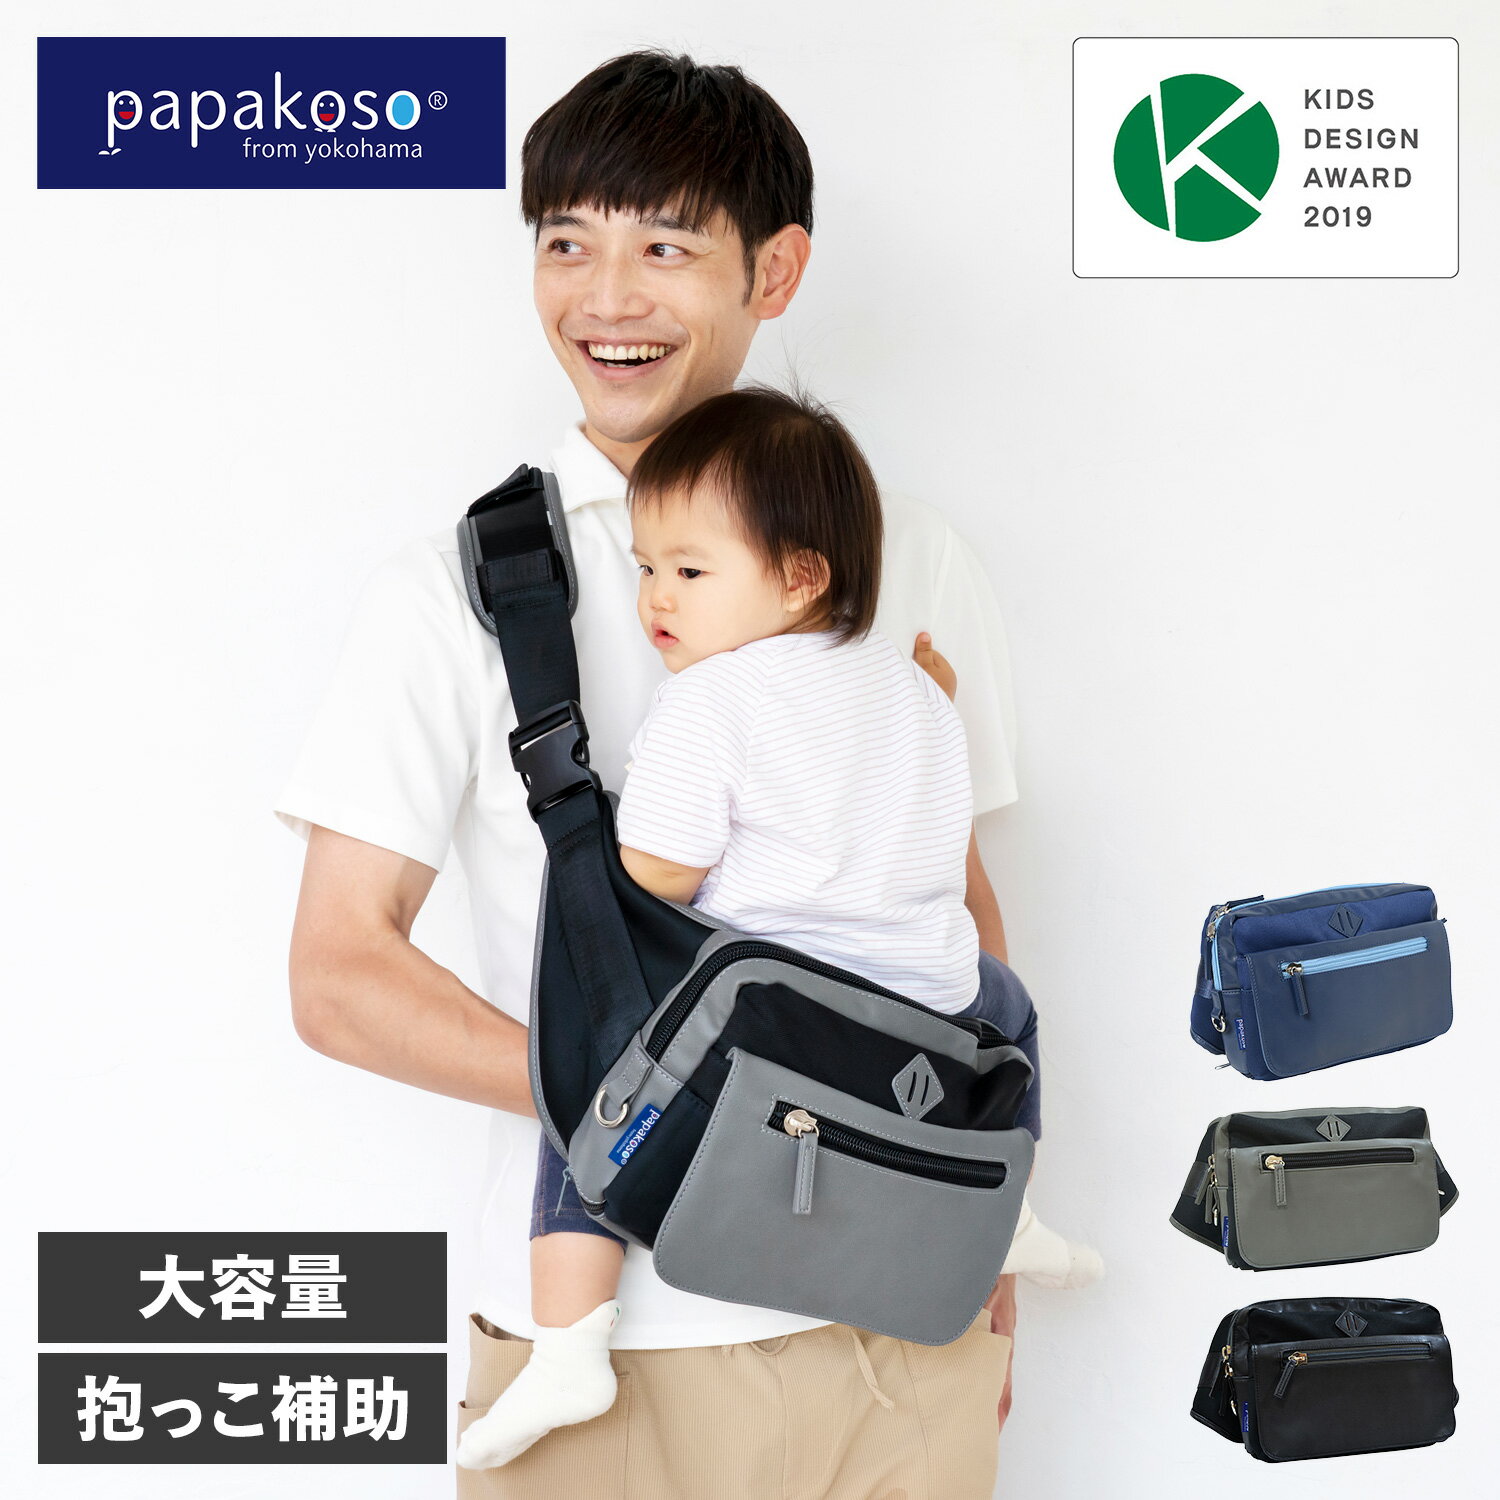 パパコソ papakoso ウエストポーチ ファザーズバッグ マザーズバッグ パパバッグ 思いやりモデル メンズ 大容量 日本製 PK-002